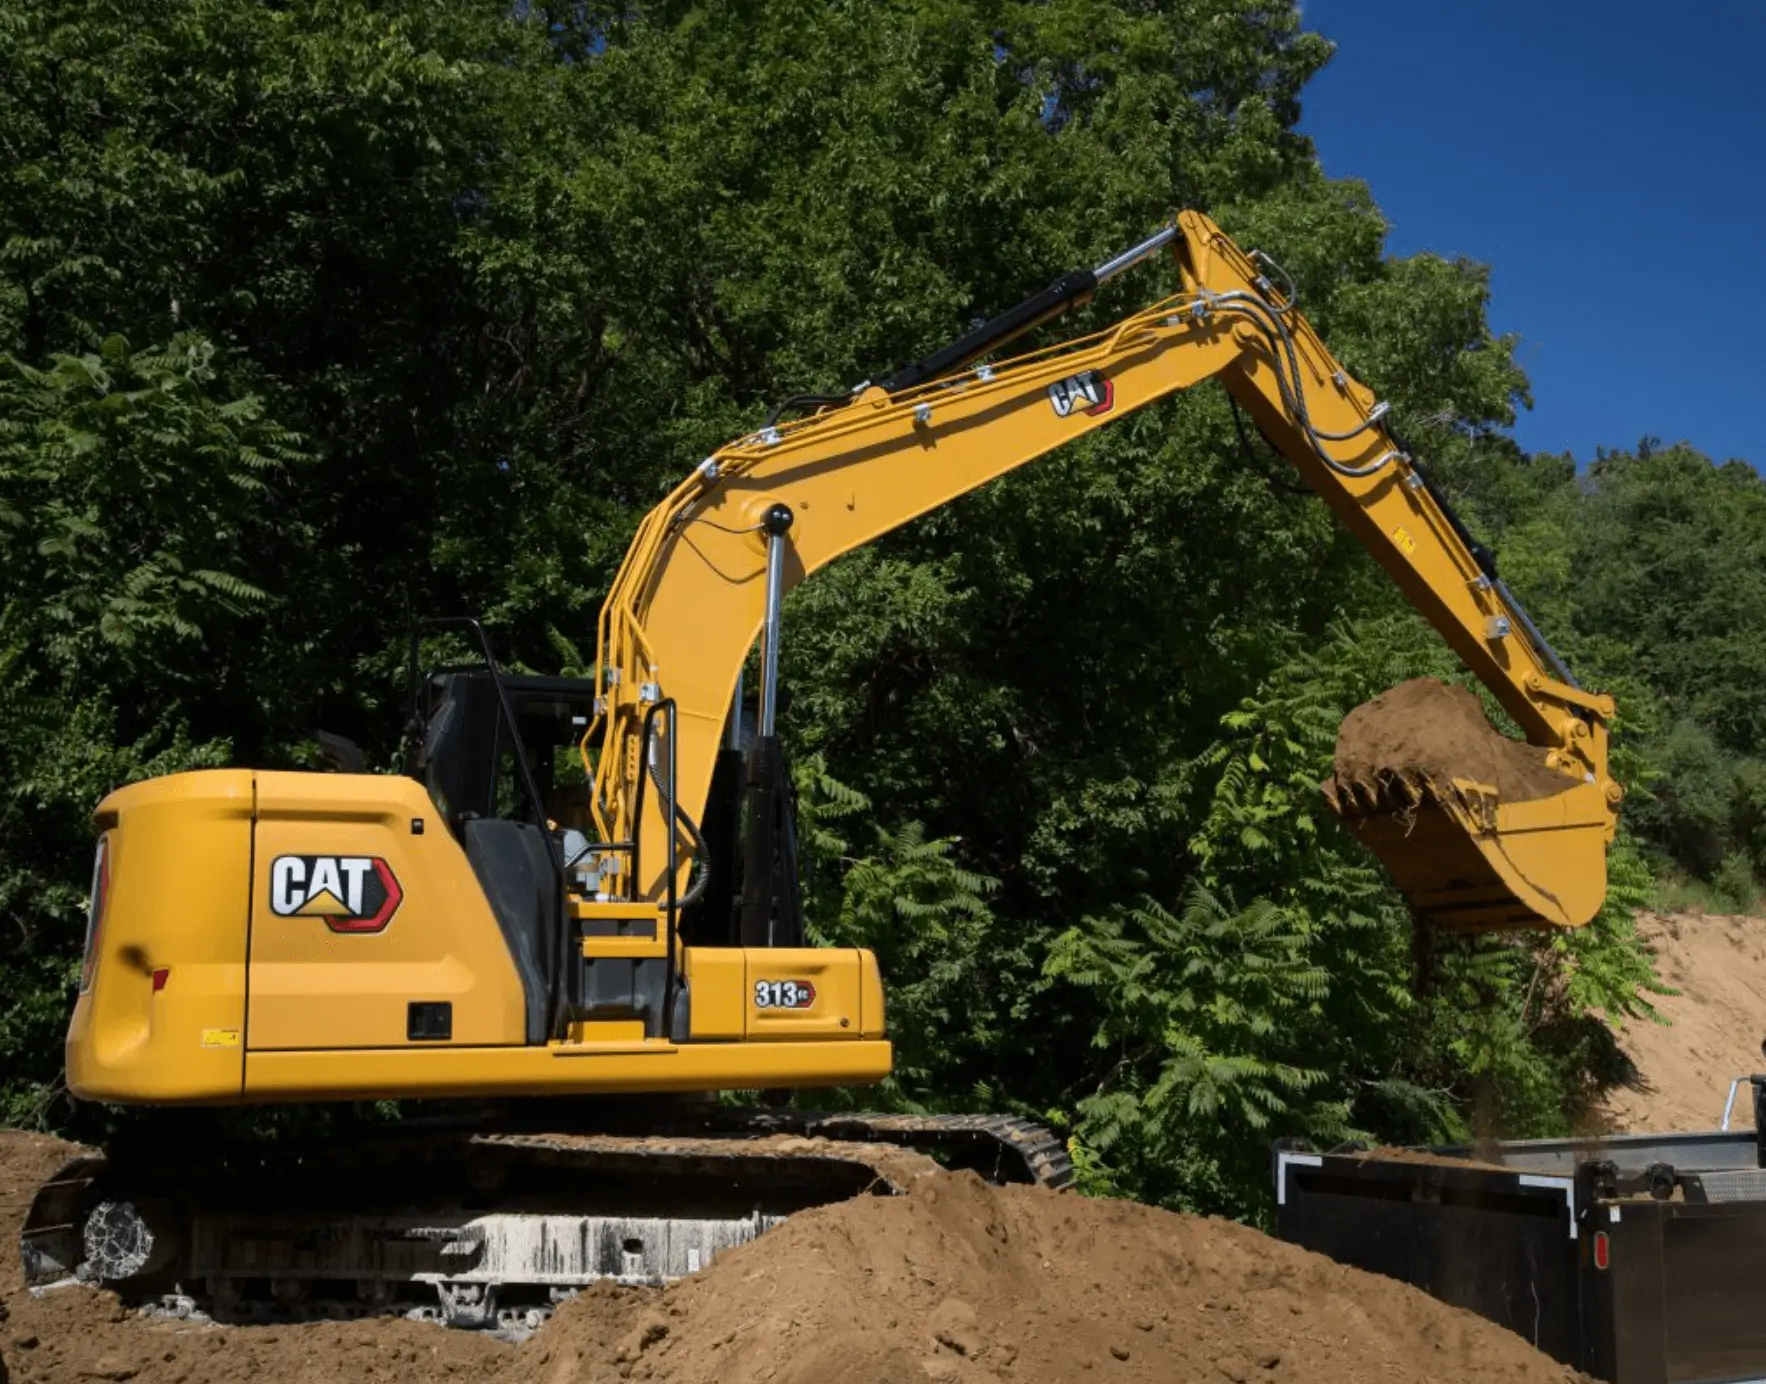 CAT excavator dumping dirt into dump truck